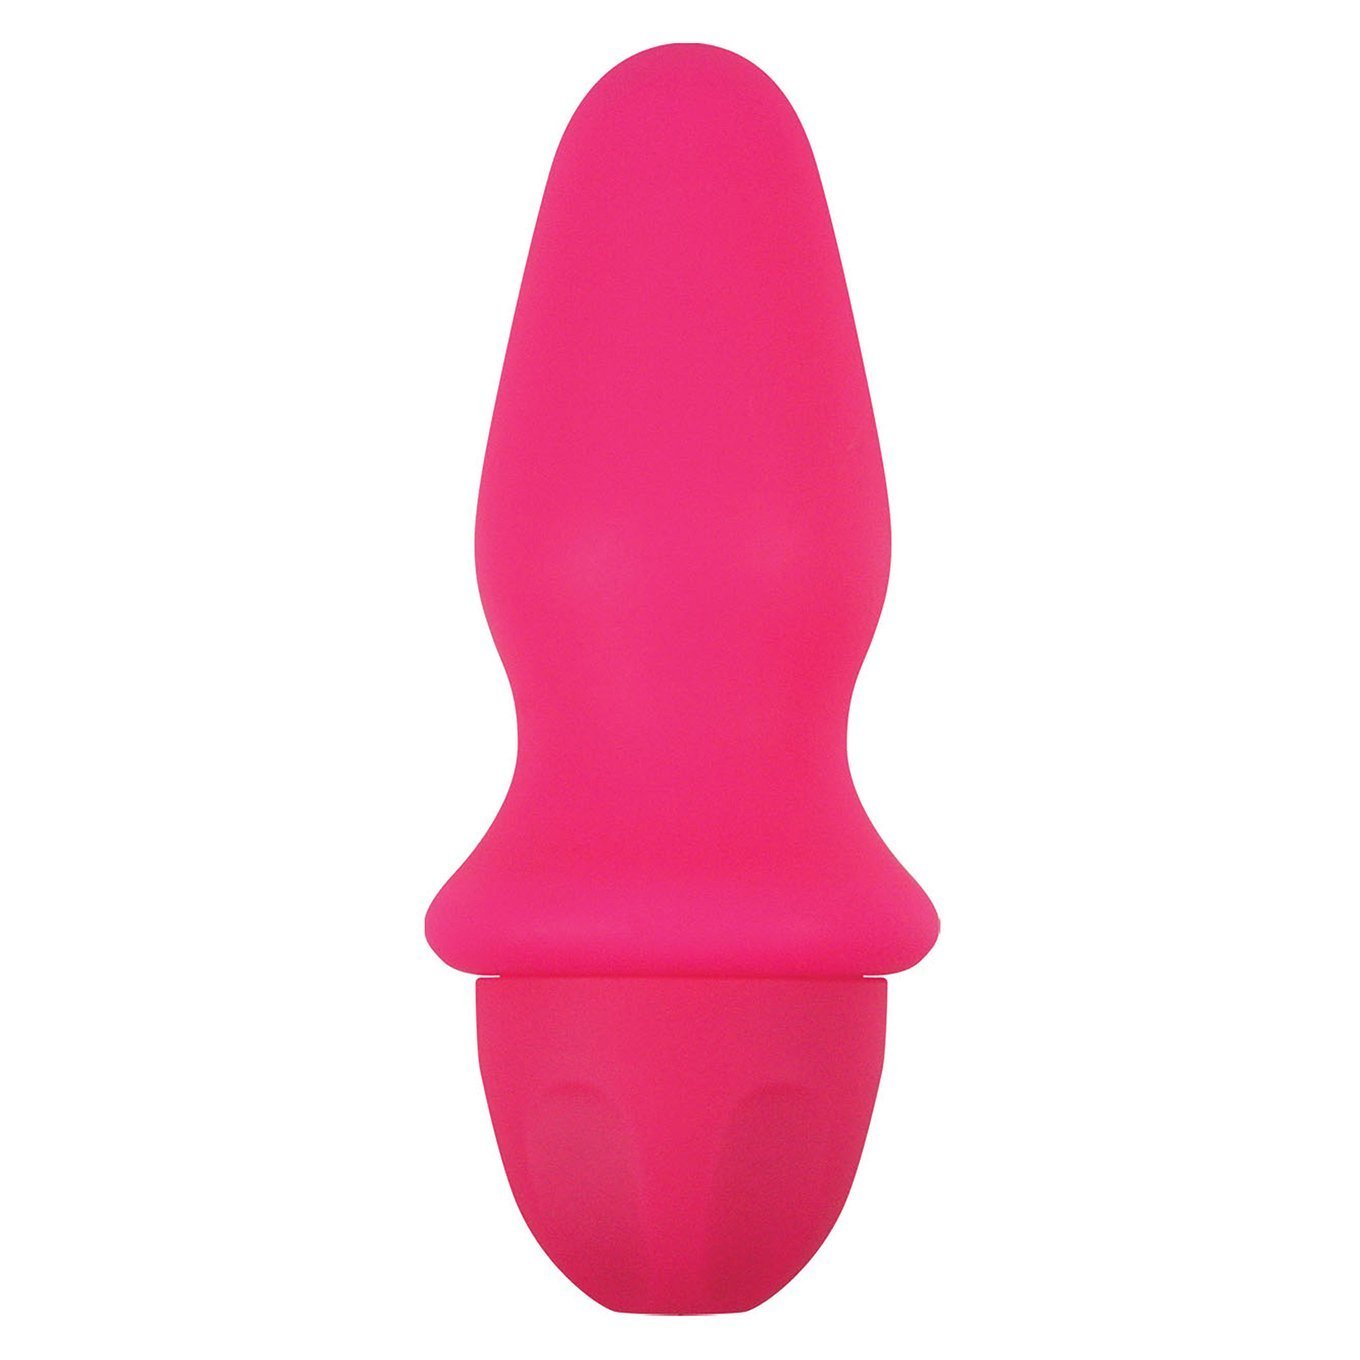 NS Novelties - Adoravibe Daisy Vibrator (Pink) -  Non Realistic Dildo w/o suction cup (Vibration) Non Rechargeable  Durio.sg